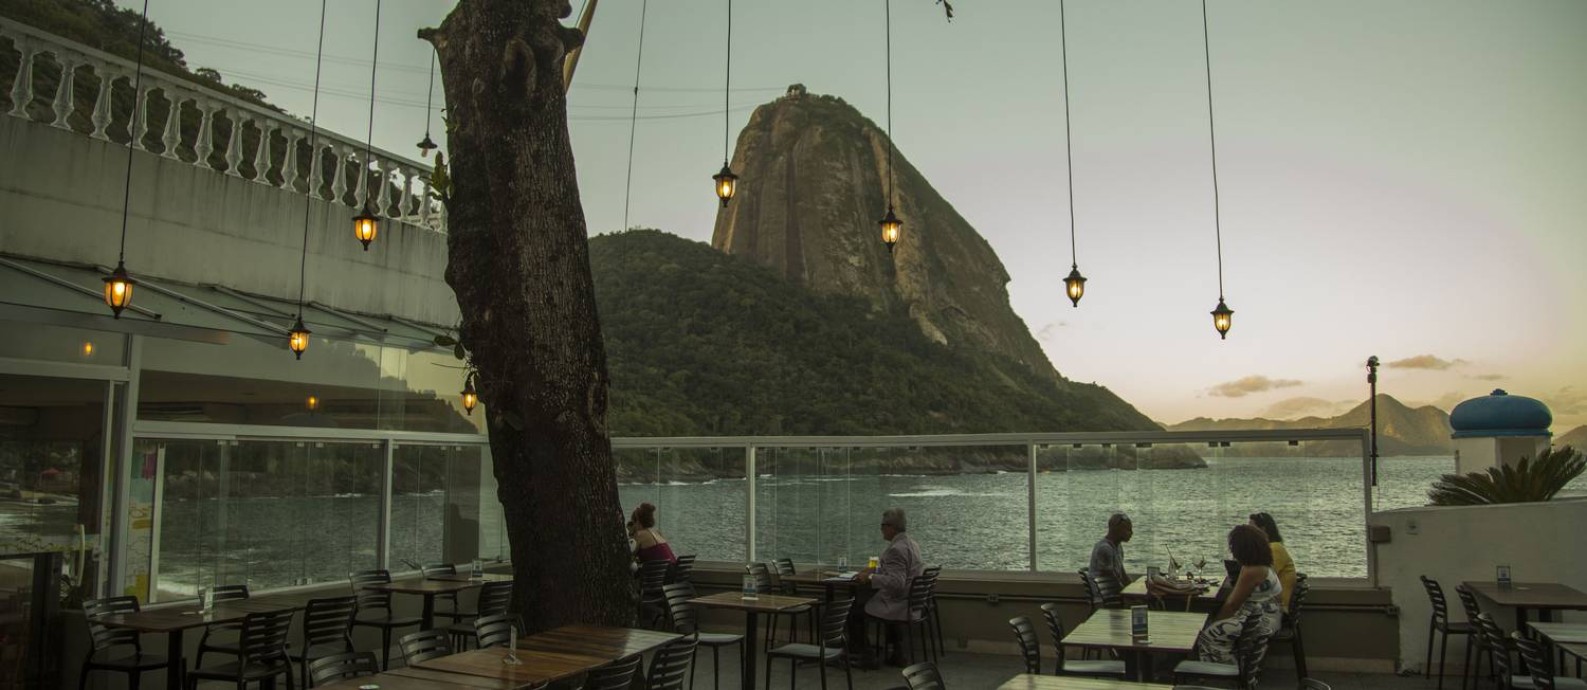 Restaurante Terra Brasilis, na Praia Vermelha, Urca Foto: Guito Moreto